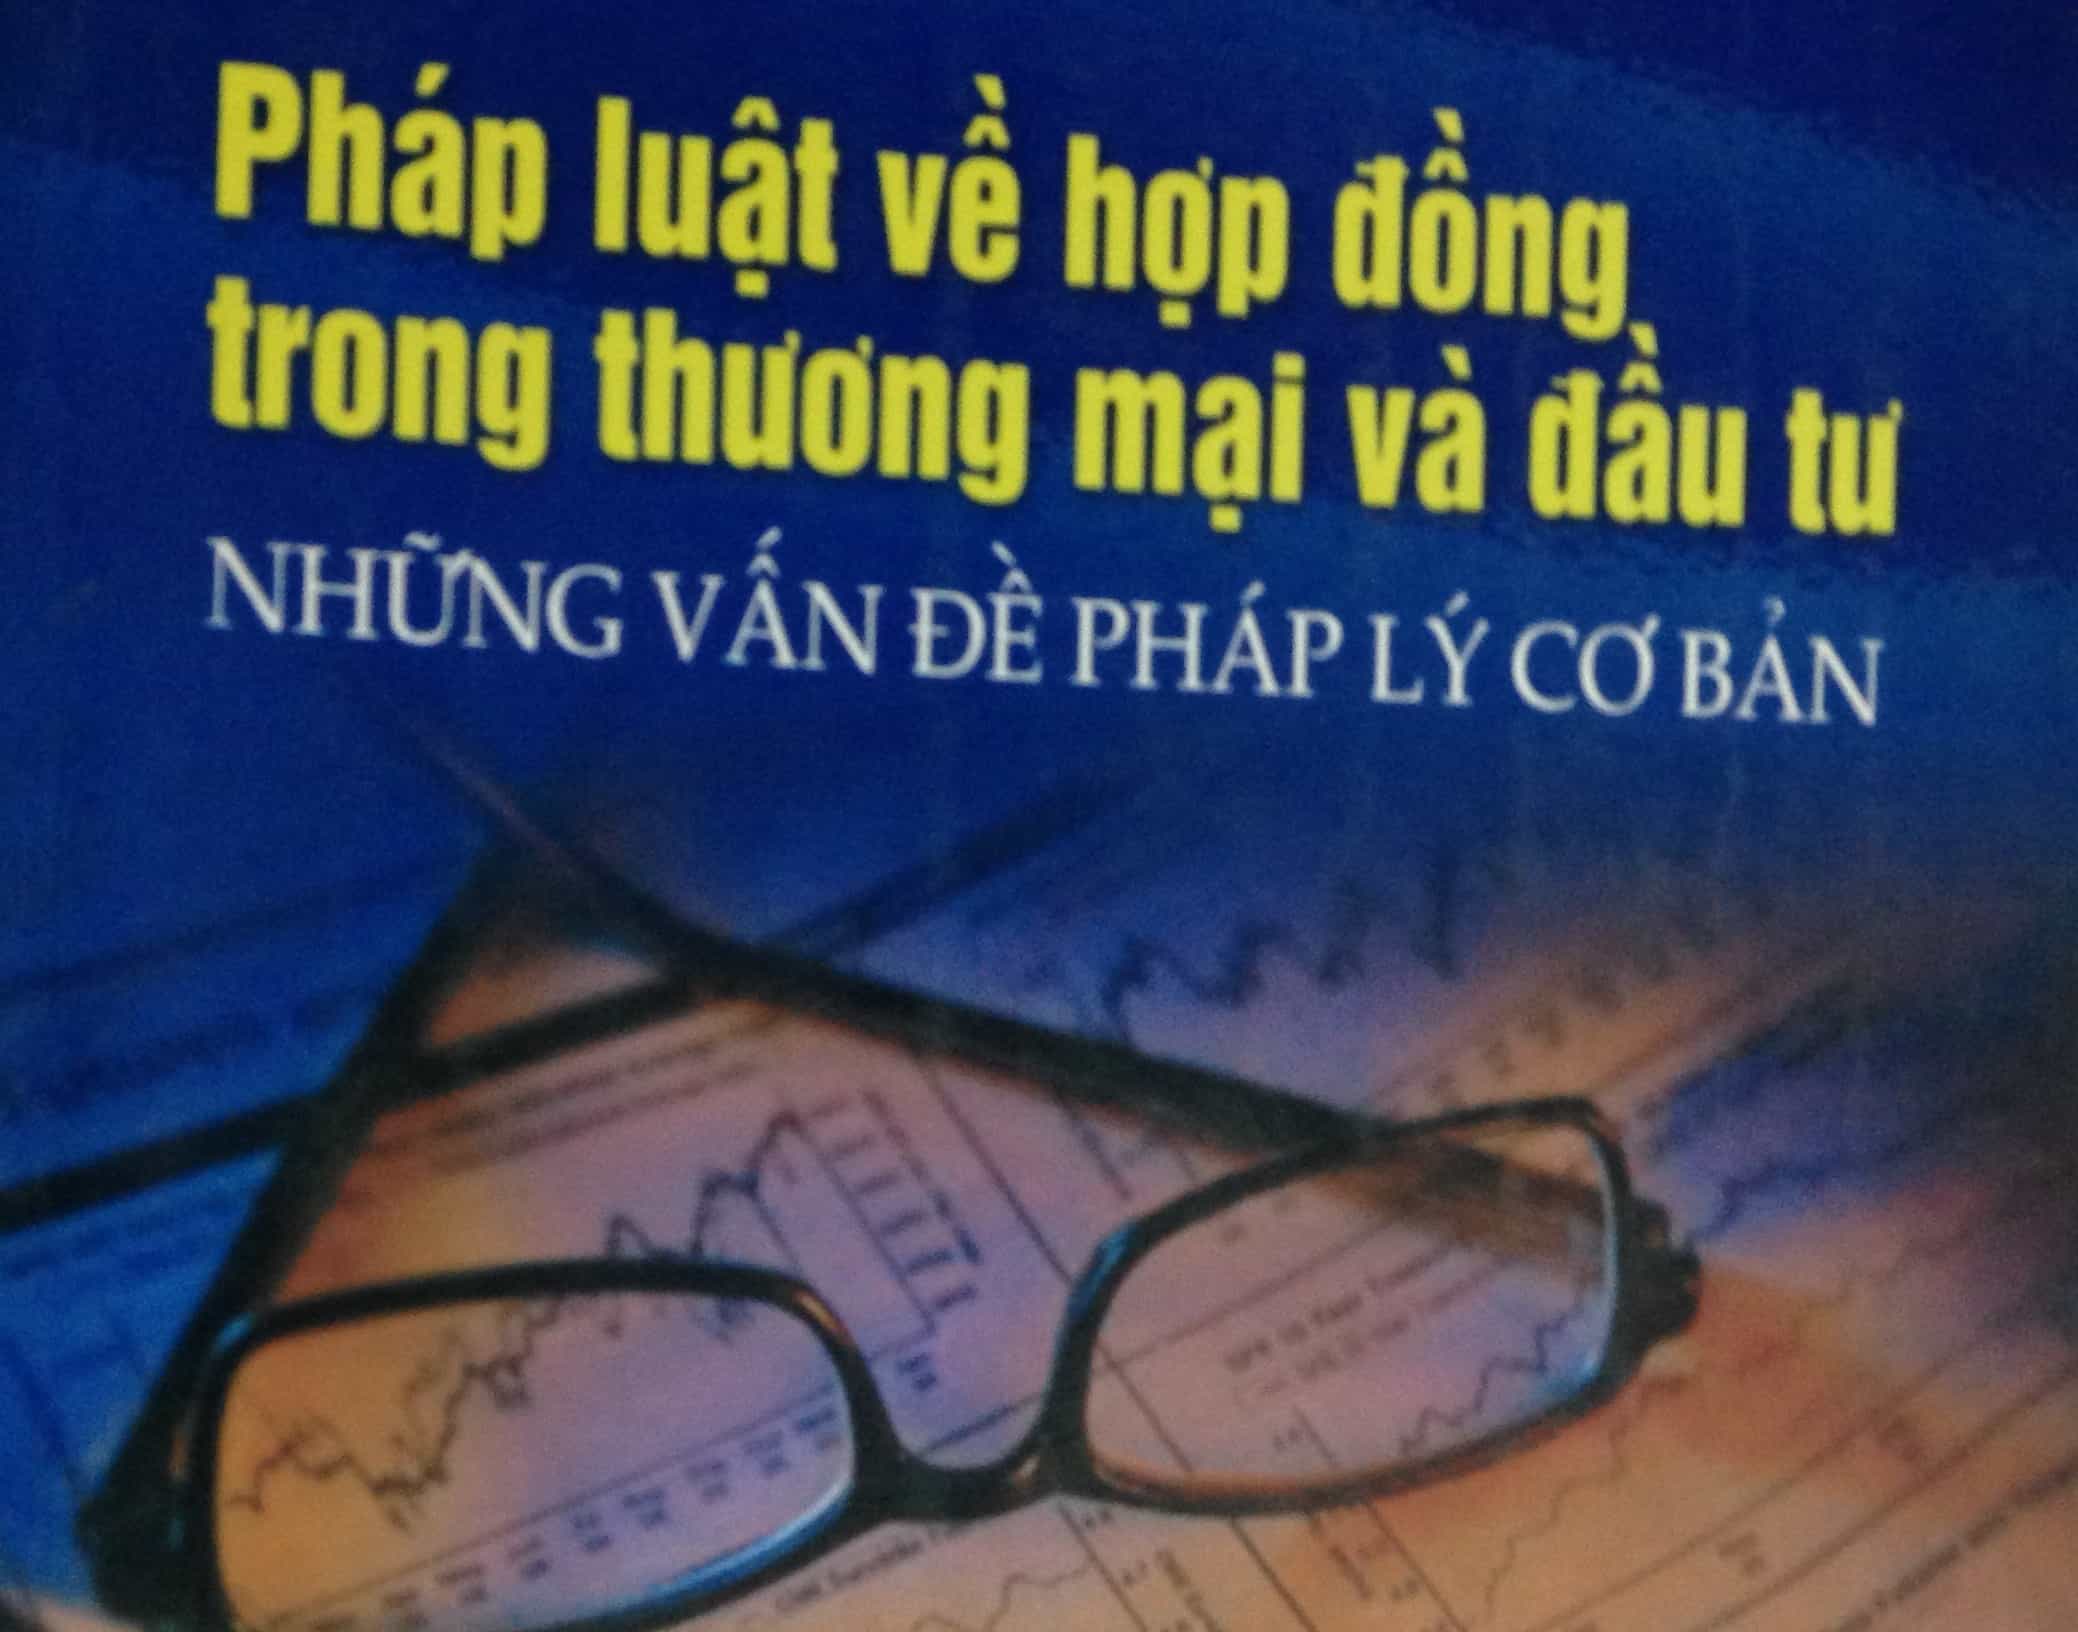 Tư vấn giải quyết tranh chấp hợp đồng - Công ty luật Việt An